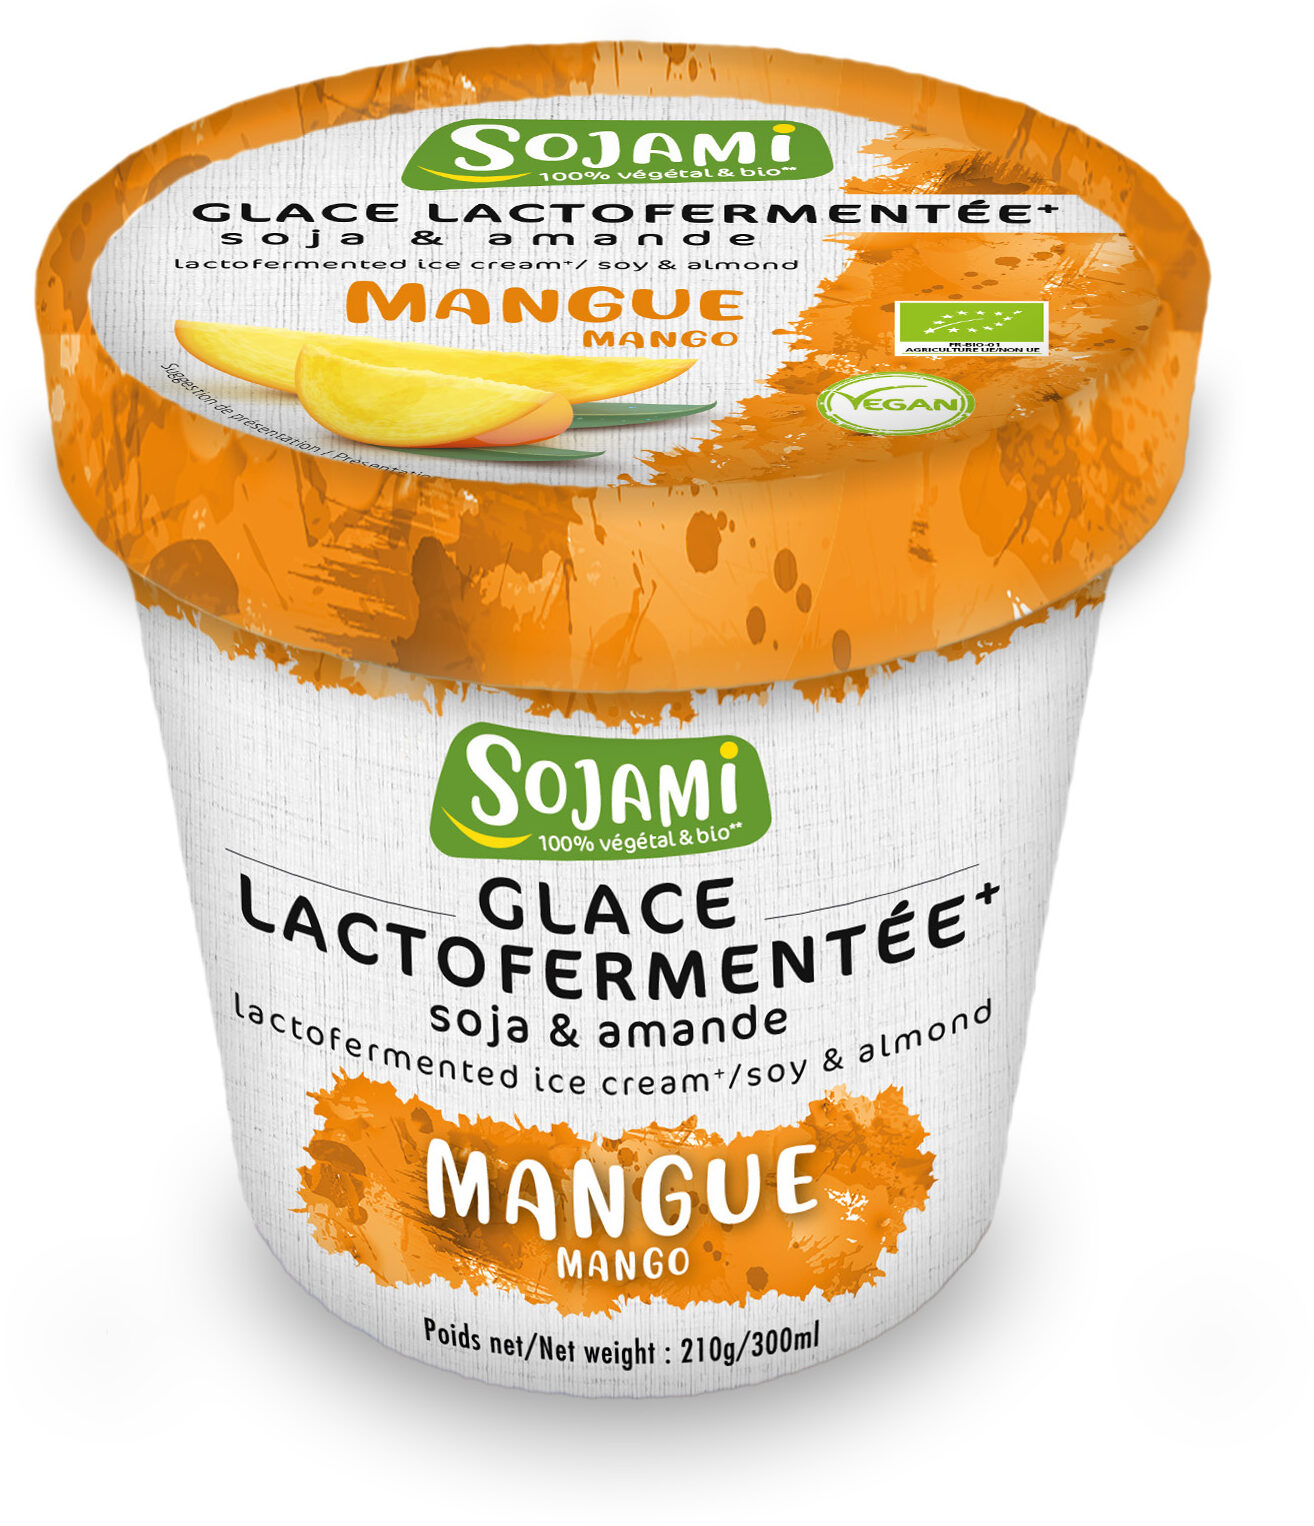 Glace lactofermentée soja & amande - mangue - Product - fr